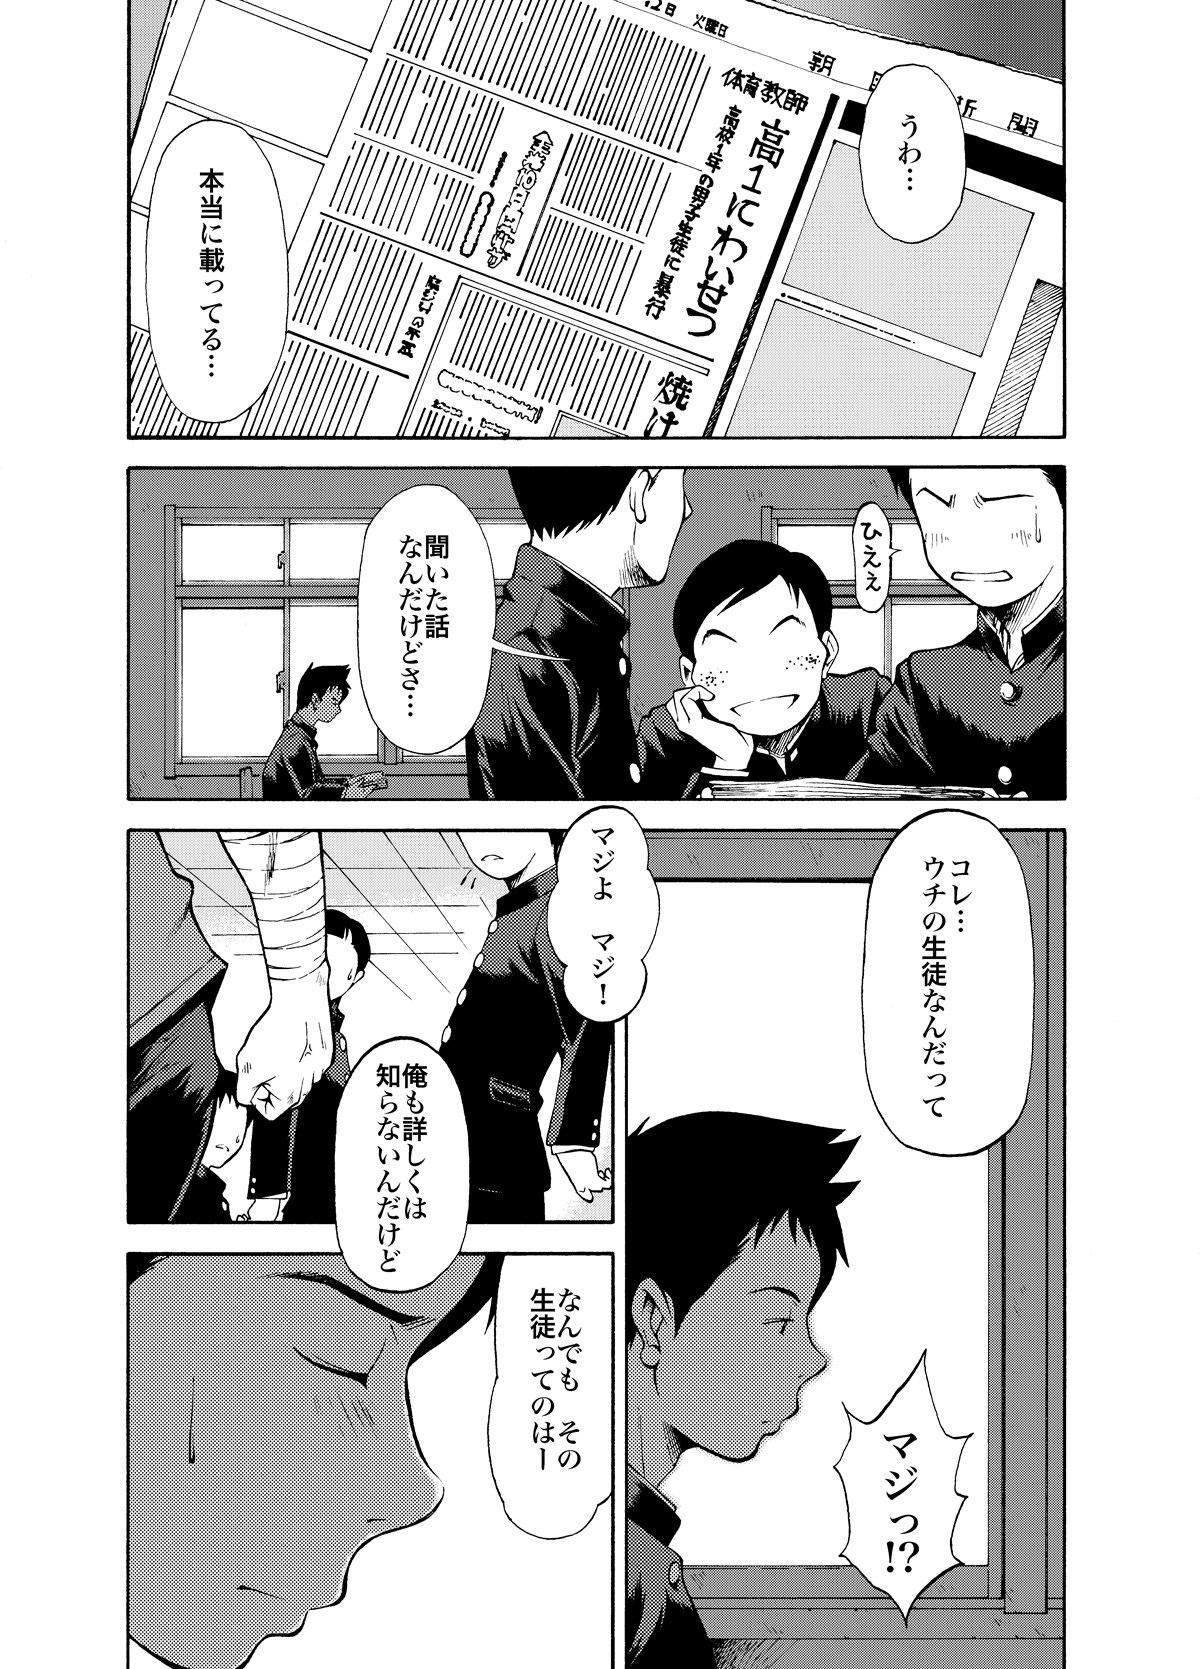 Prima KOWMEIISM - Oumagatoki & Reimei Outdoor - Page 12